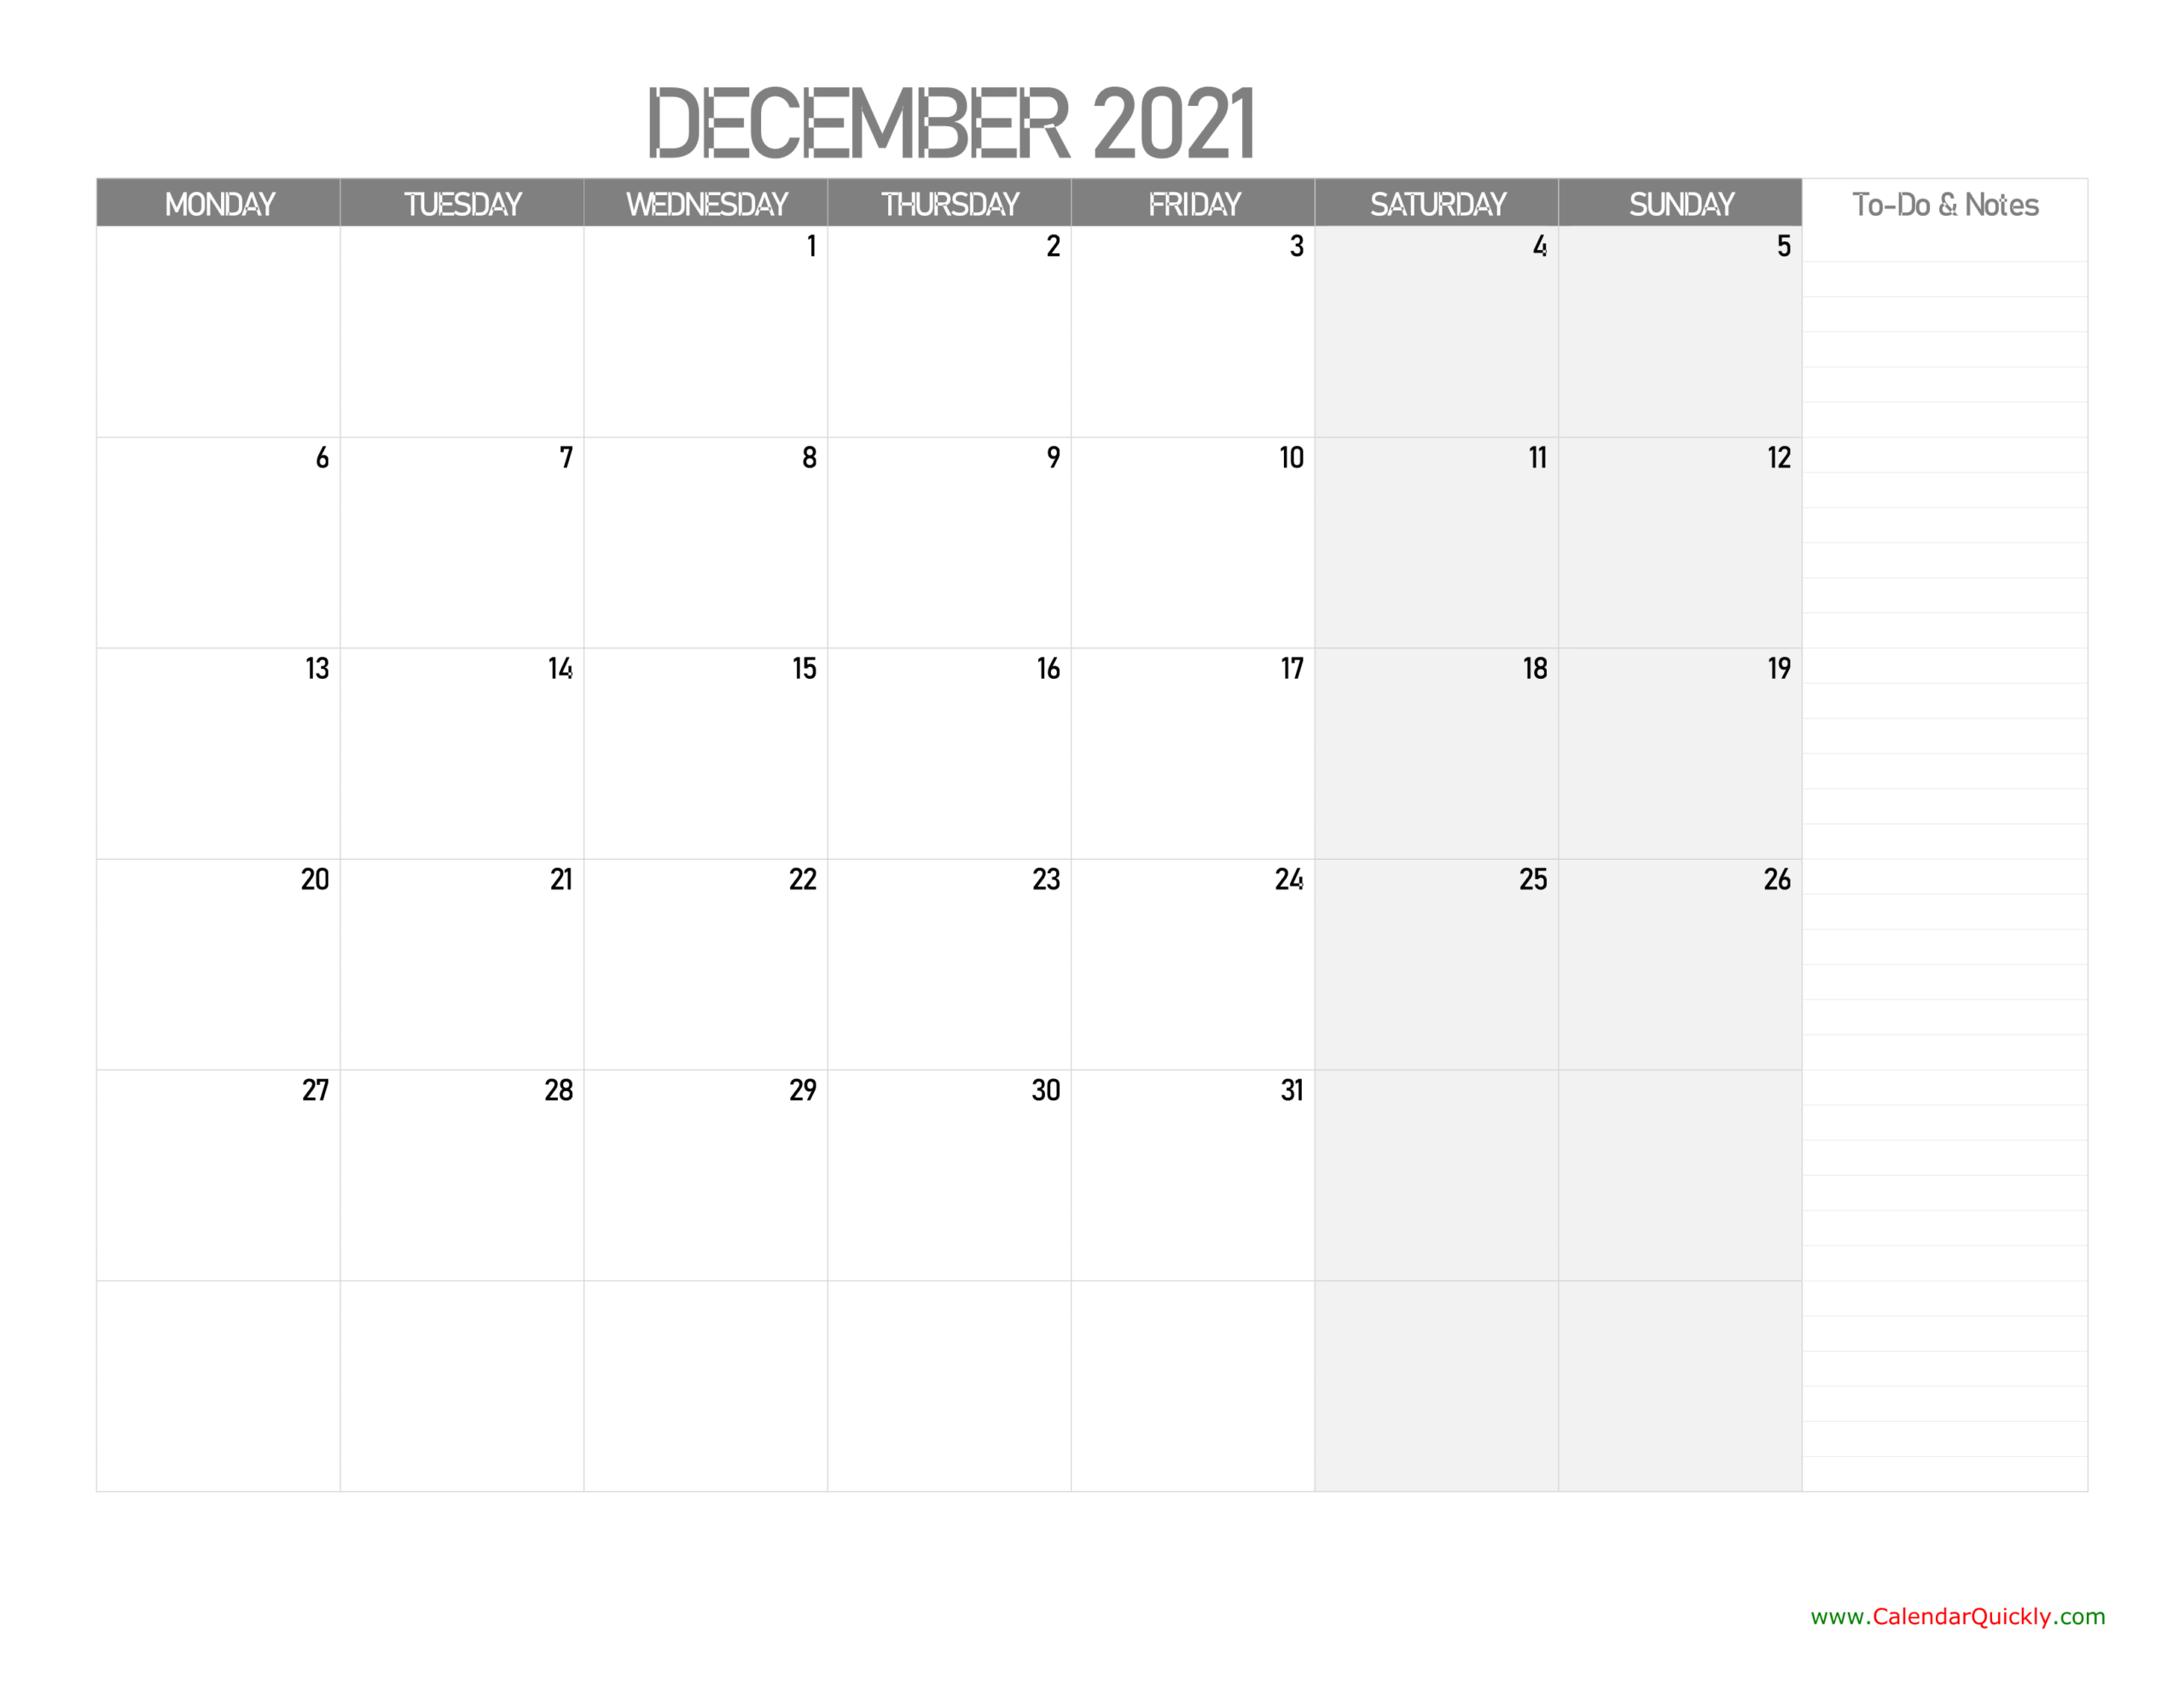 december monday calendar 2021 with notes | calendar quickly